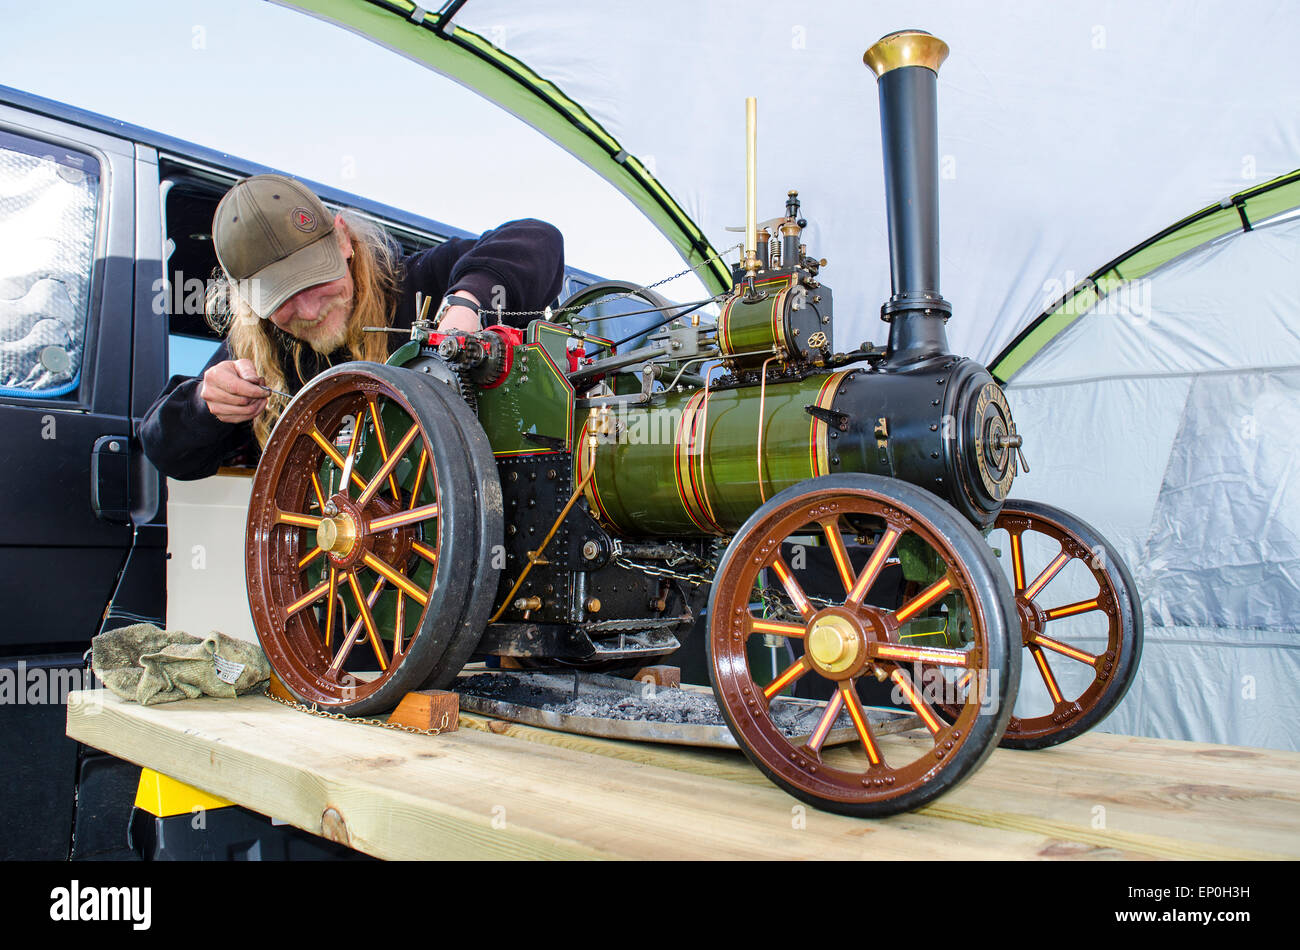 Un passionné avec un moteur à vapeur miniature Banque D'Images